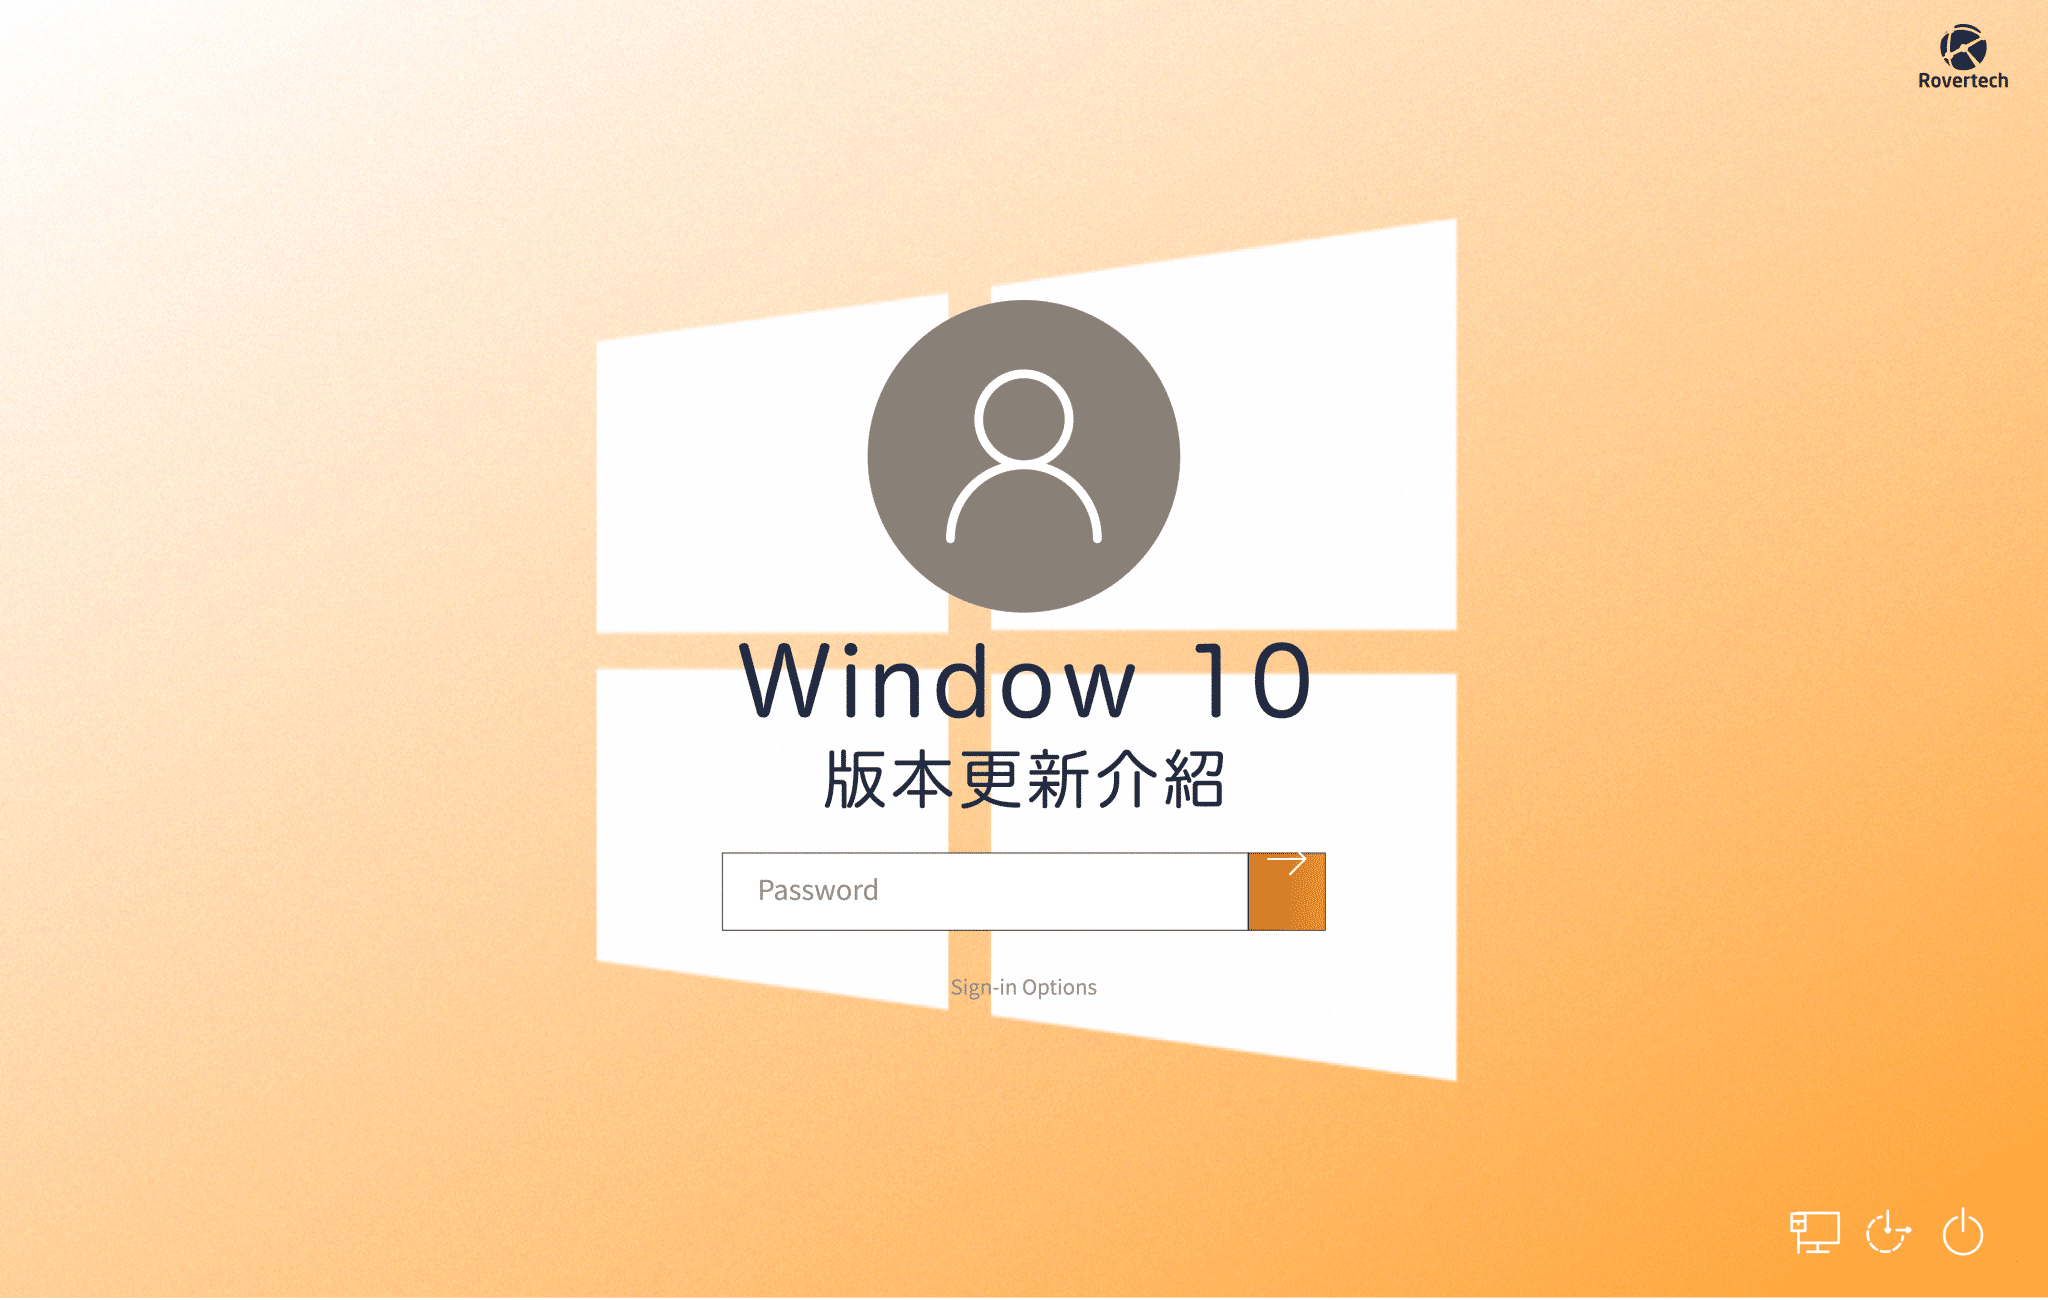 Window 10 全新介面設計